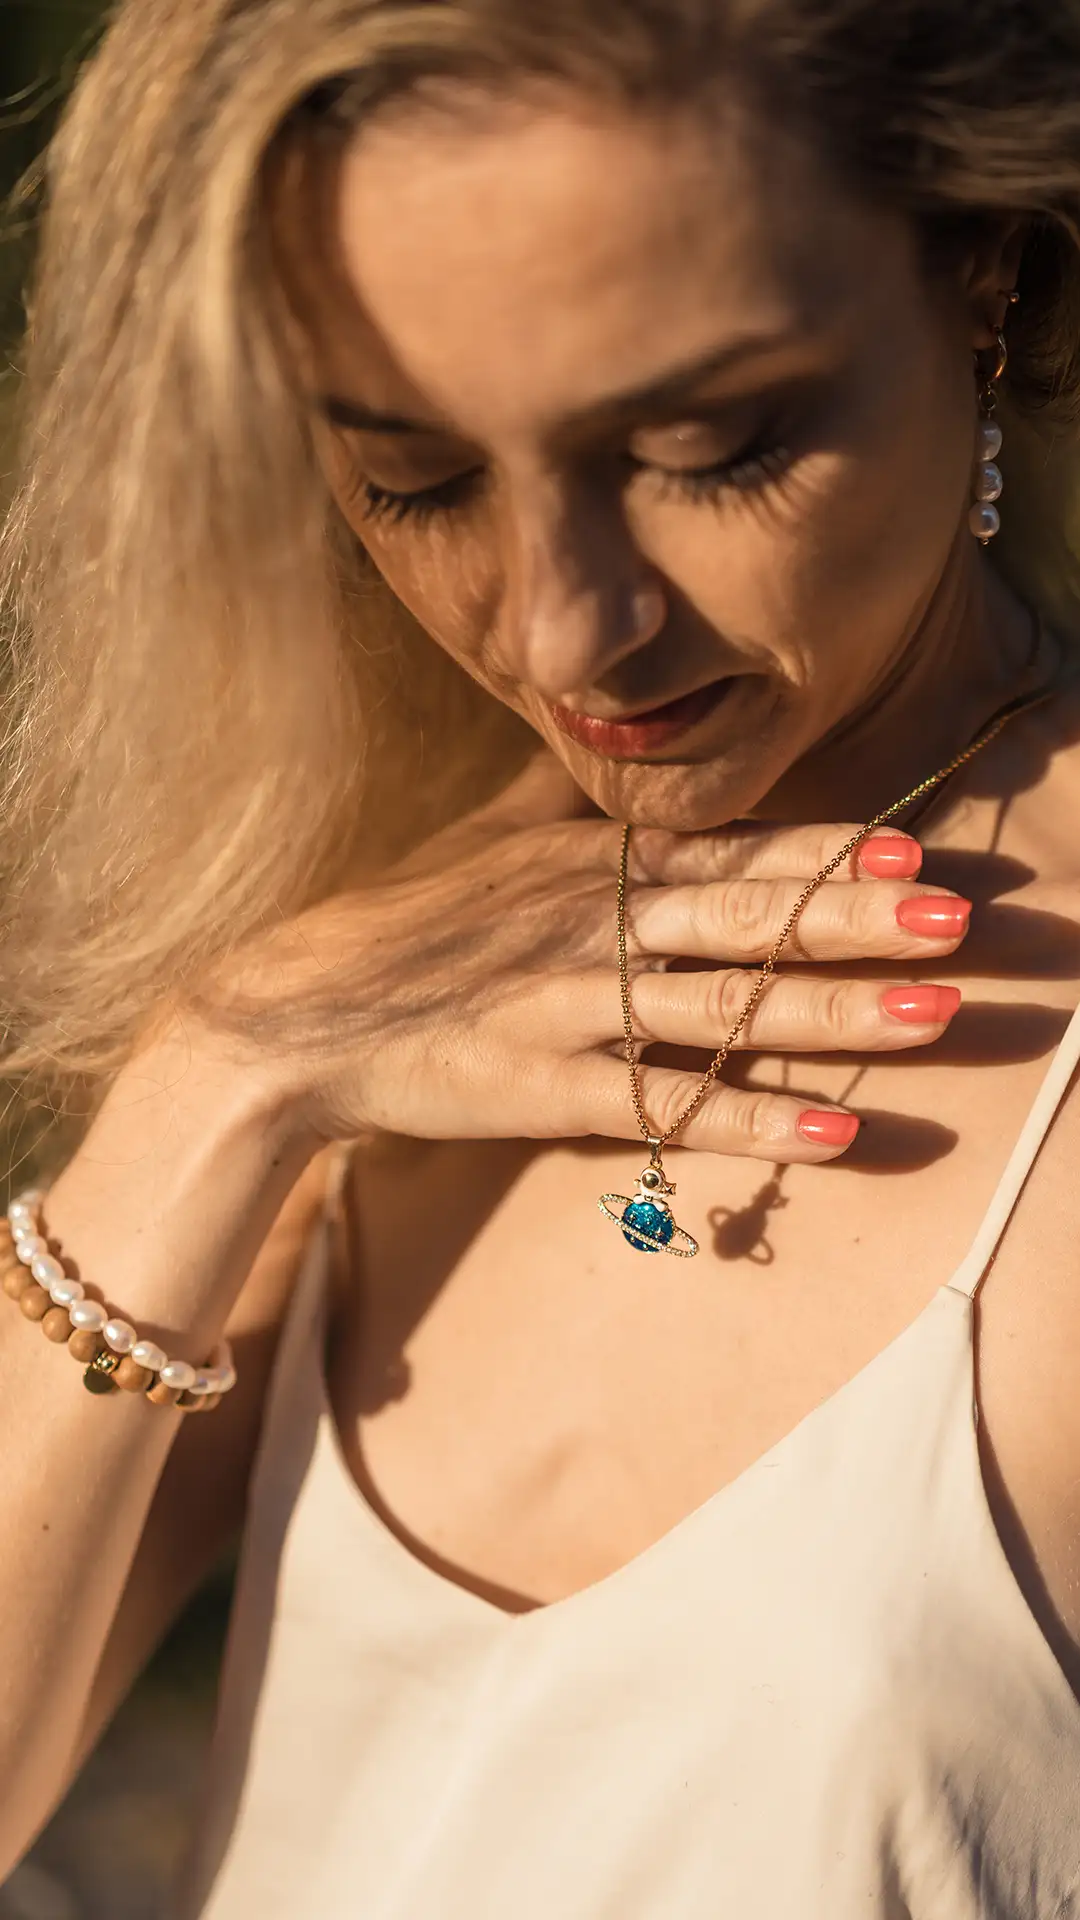 Elma dévoile la magie cachée des bijoux. Un collier et des bracelets faits main par DENADDA